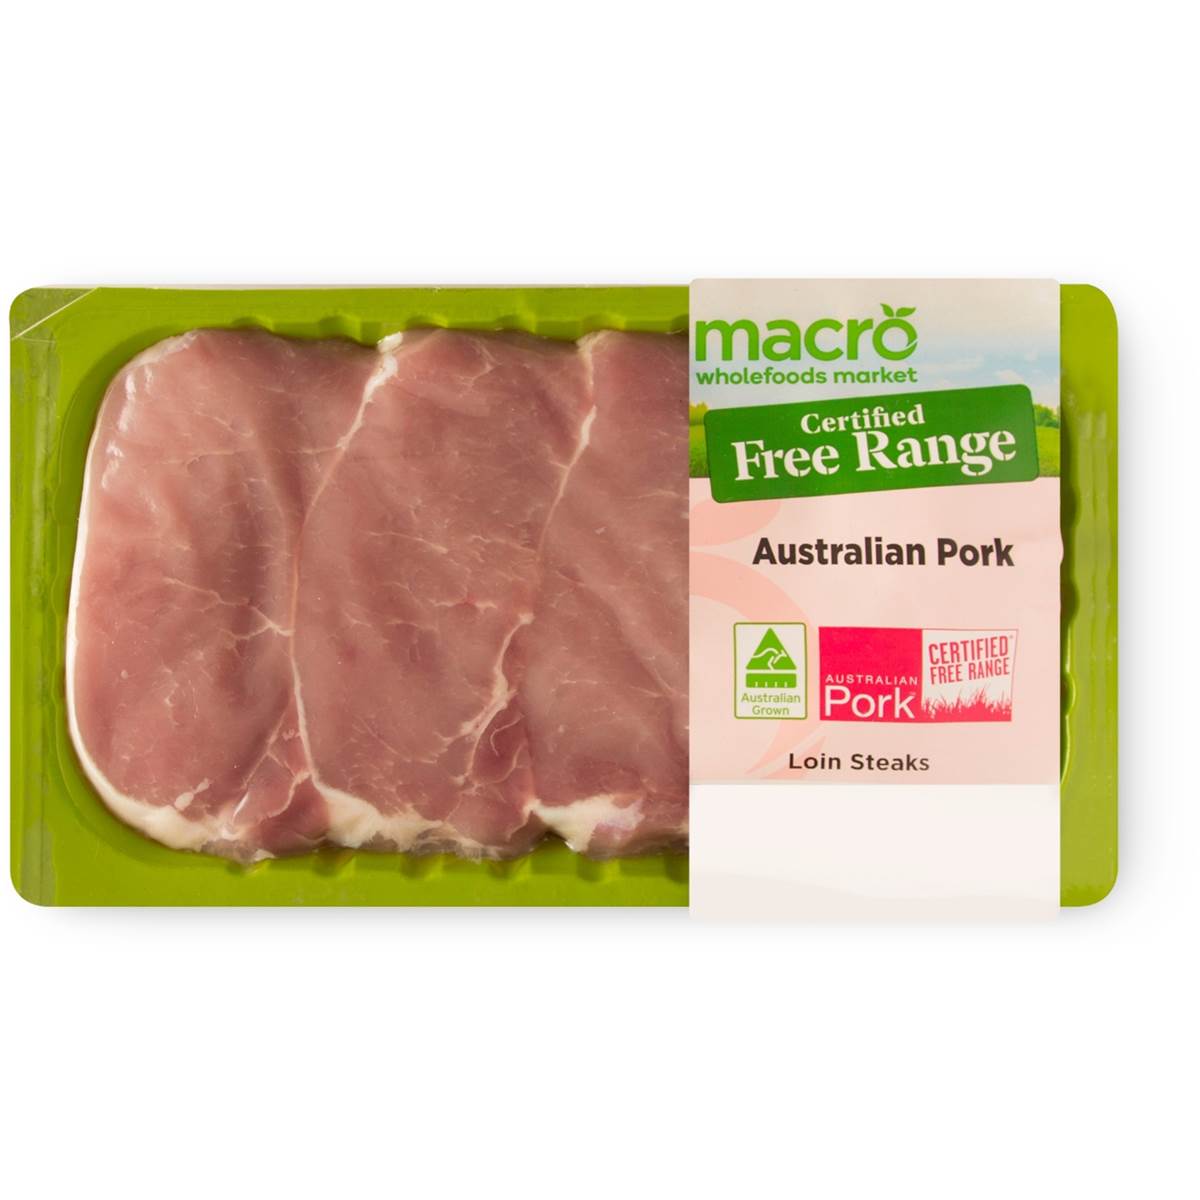 Macro Free Range Pork Steak Medallion